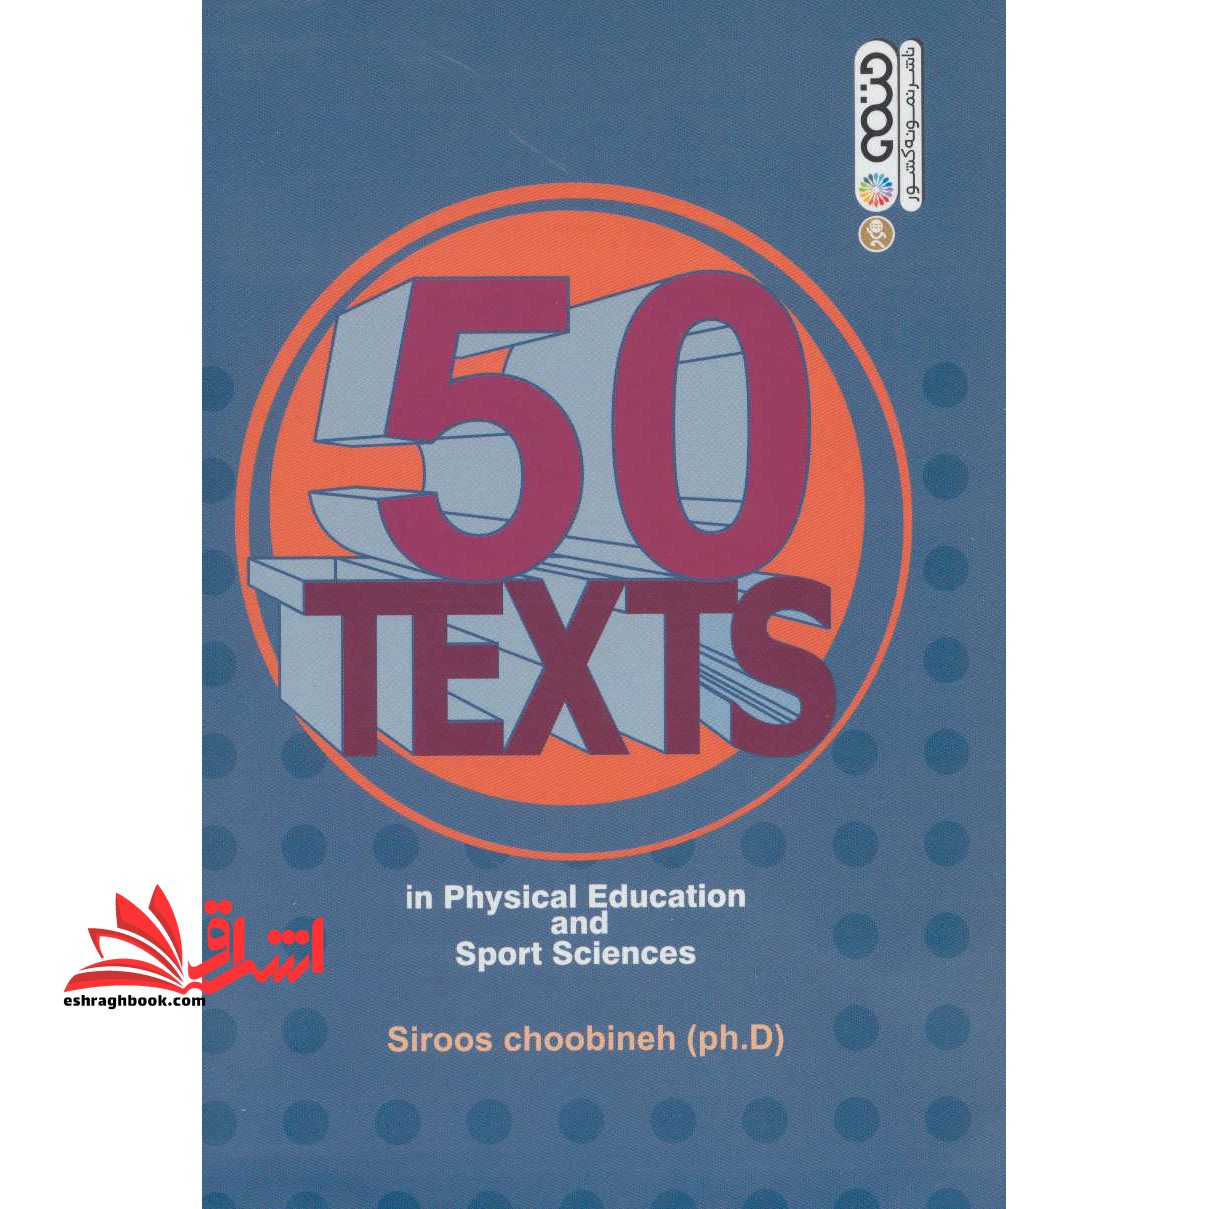 ۵۰ متن تخصصی تربیت بدنی و علوم ورزشی ۵۰ Texts in physical education and sport sciences